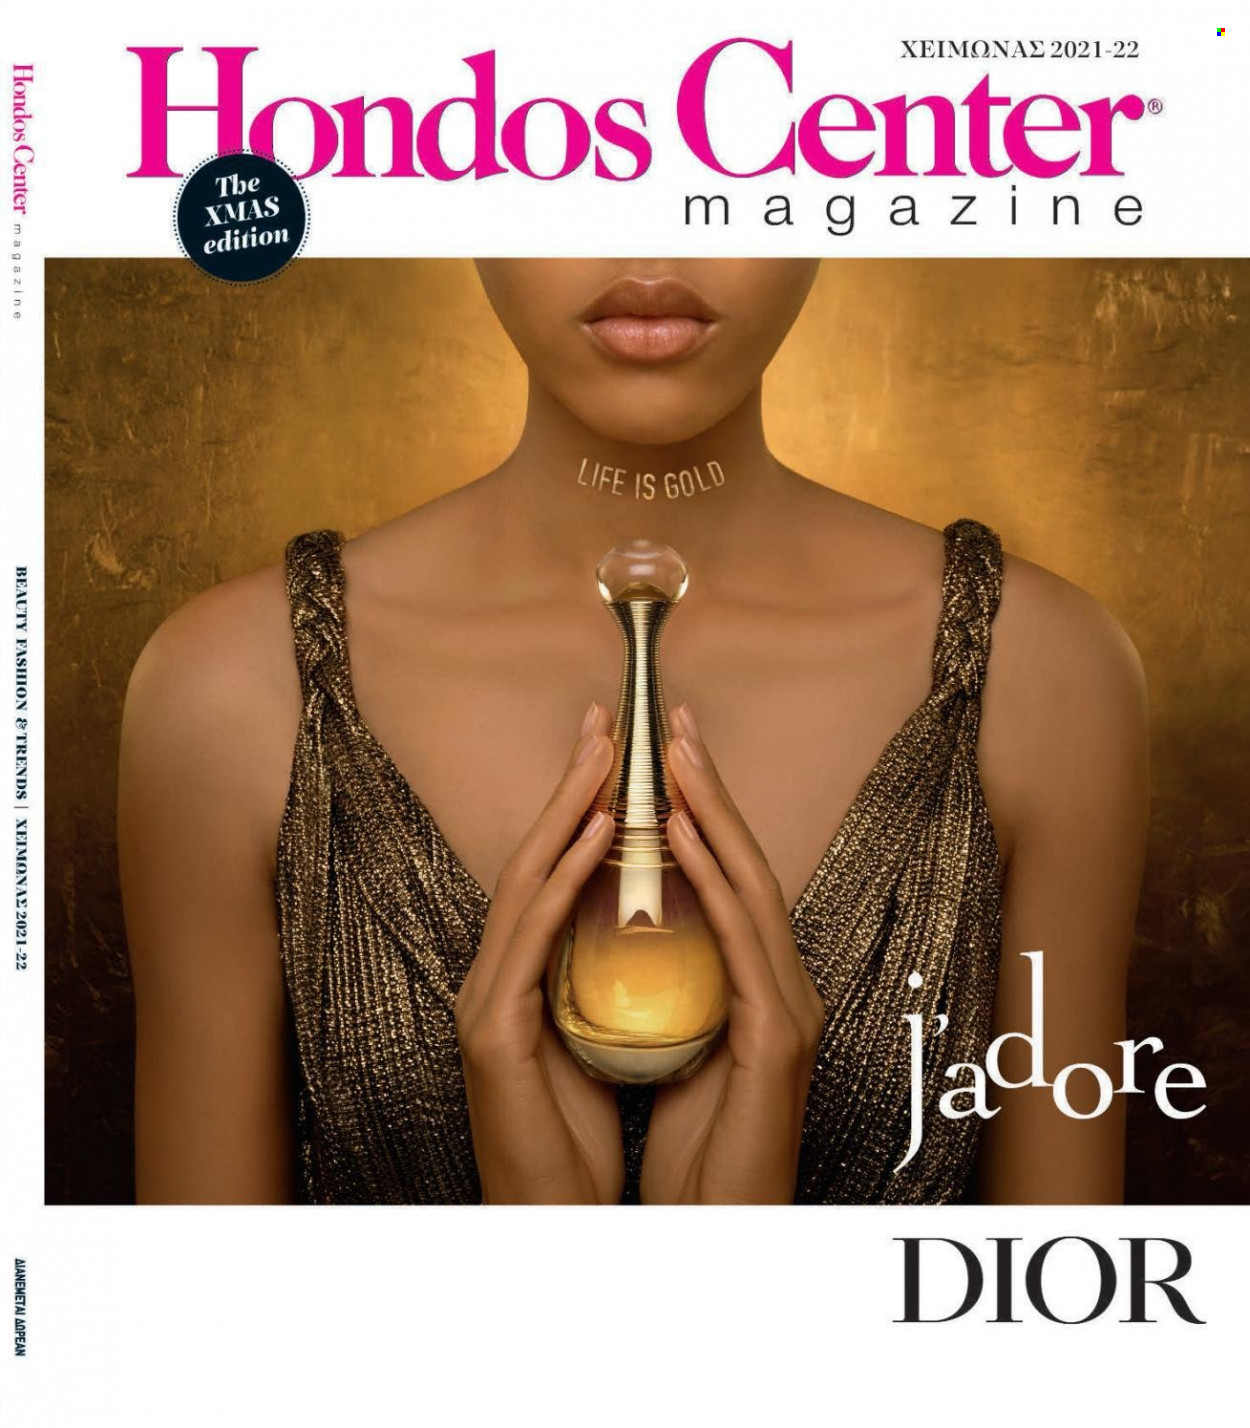 Φυλλάδια Hondos Center - Εκπτωτικά προϊόντα - Dior. Σελίδα 1.